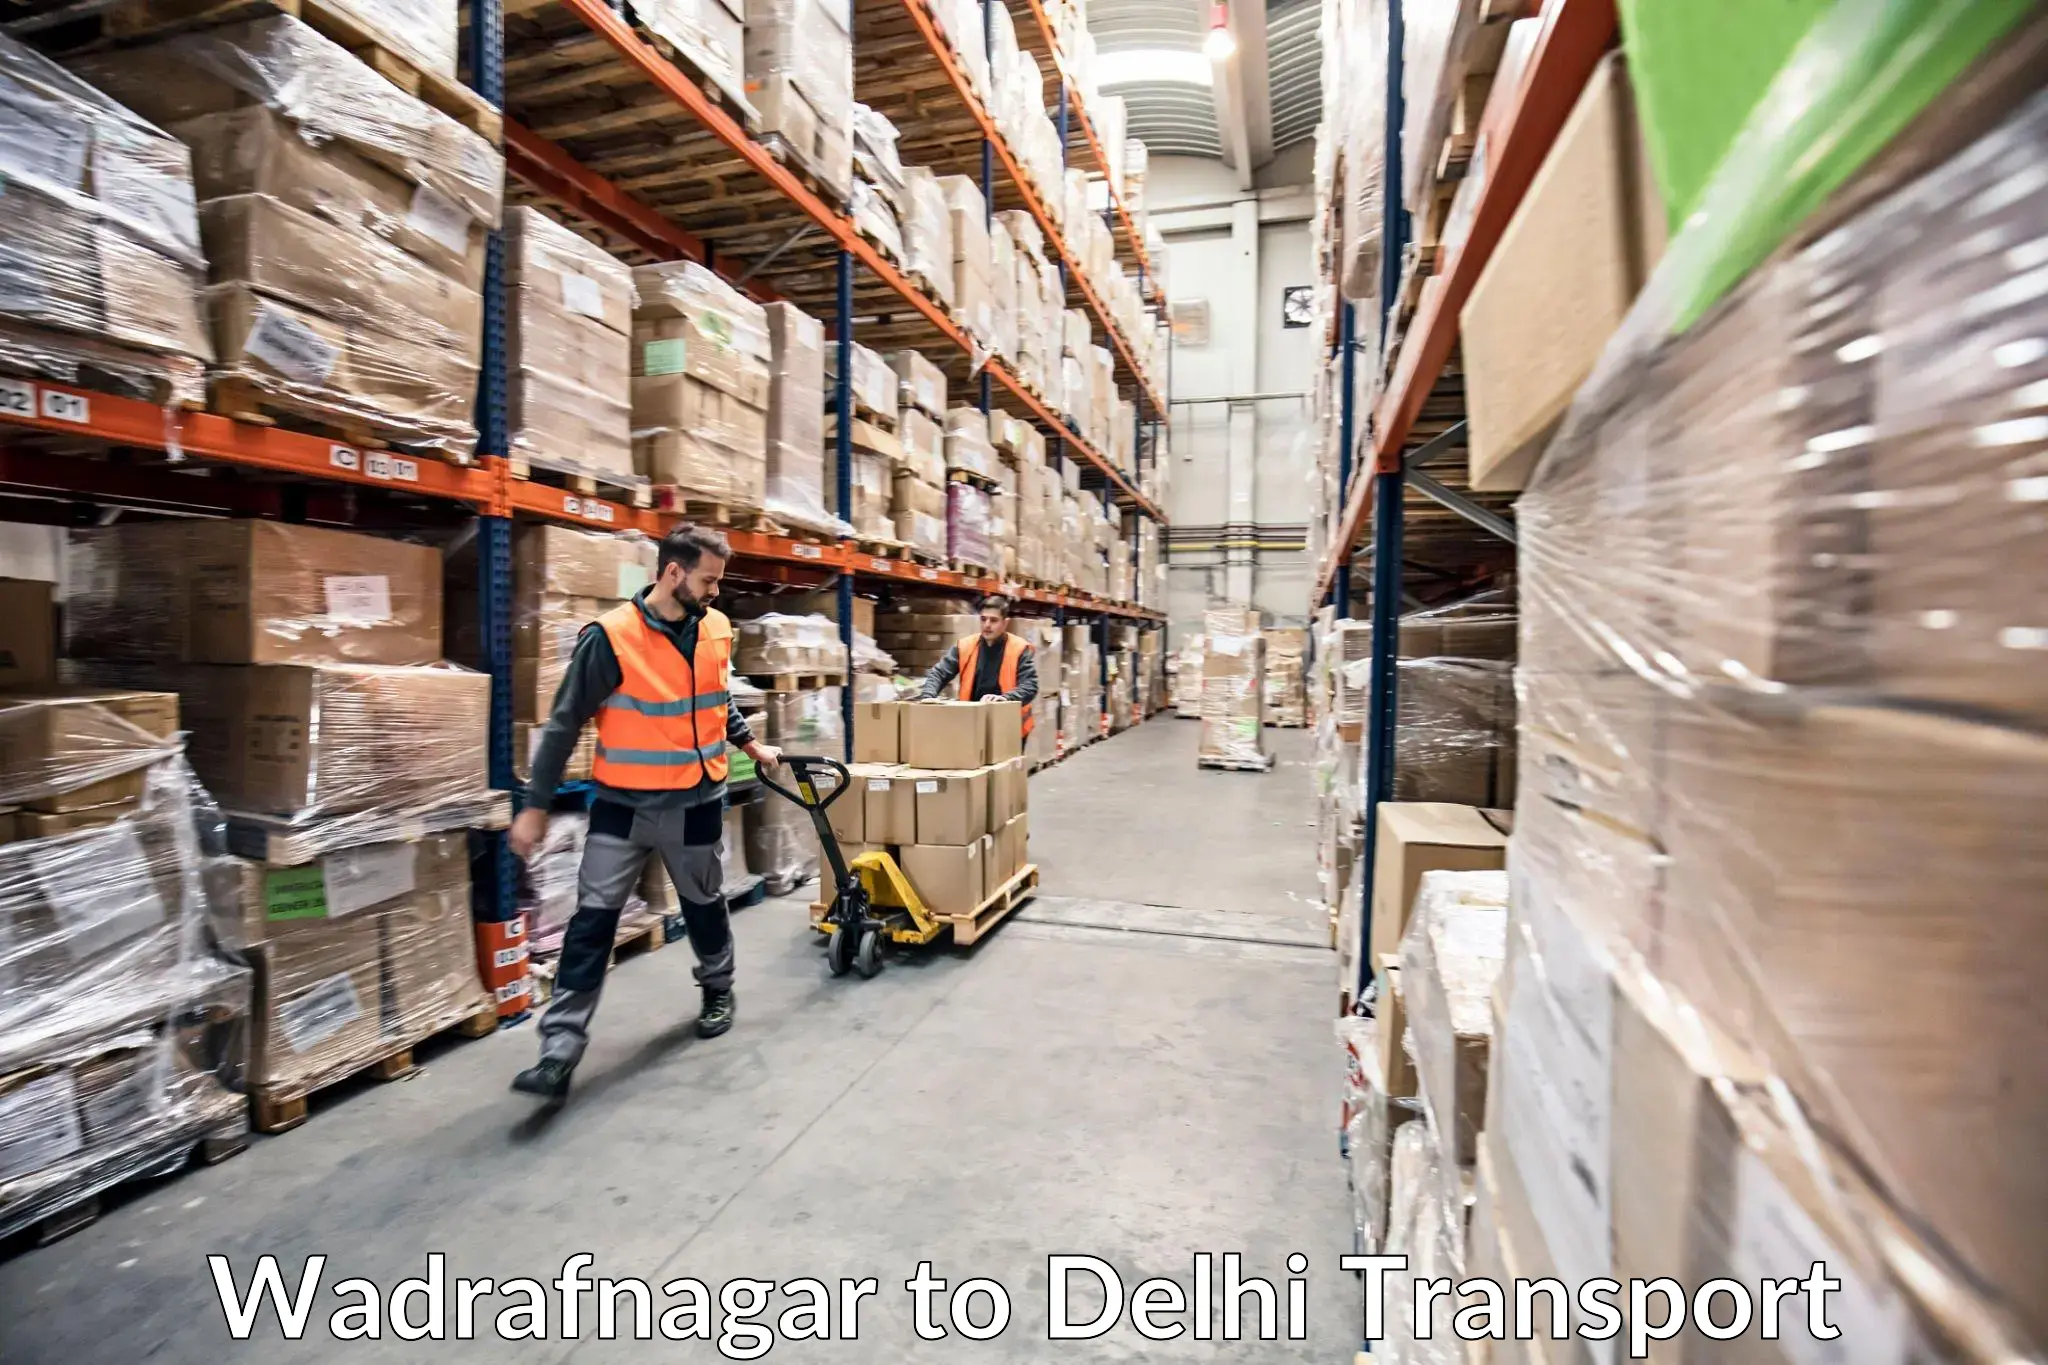 Goods delivery service Wadrafnagar to NIT Delhi